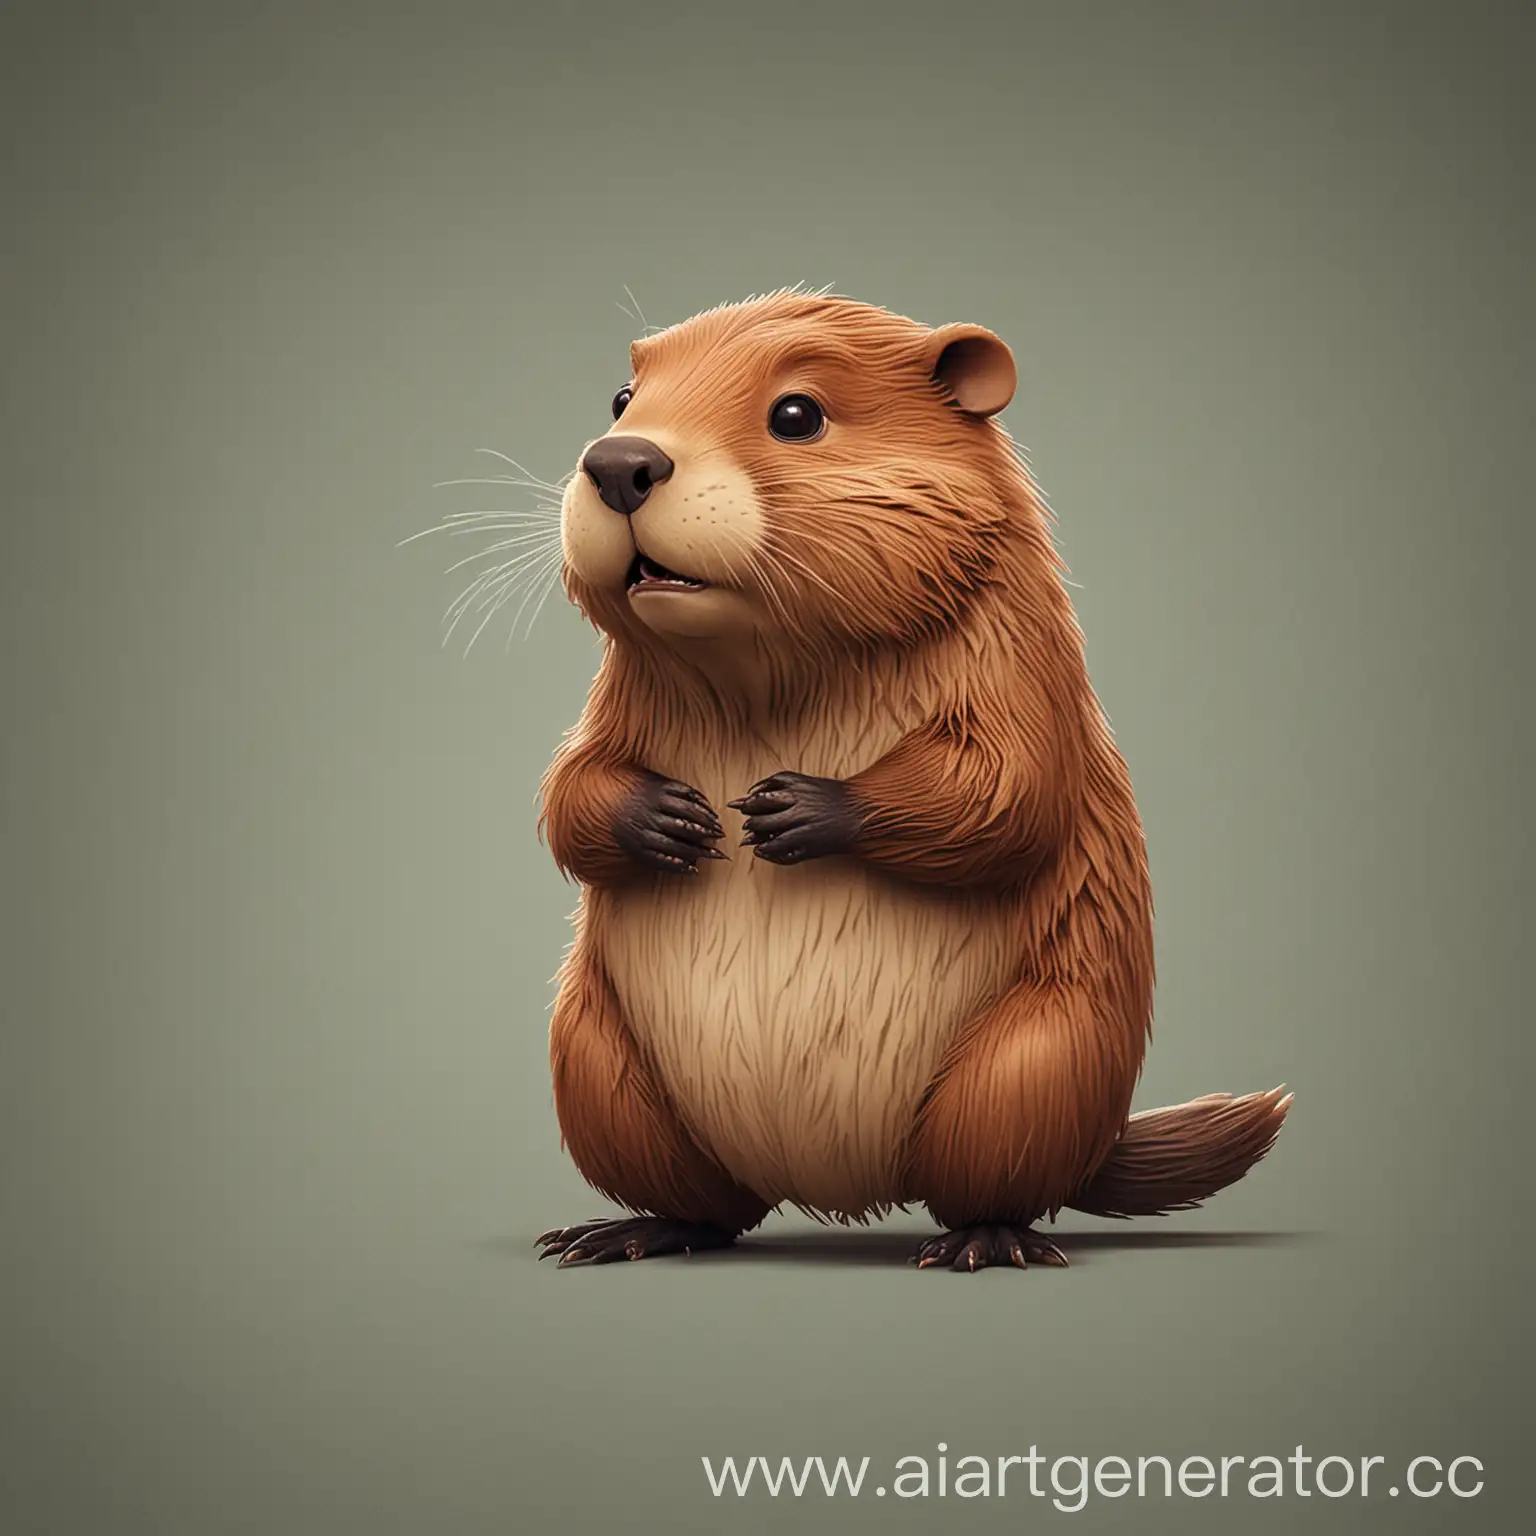 Playful-Beaver-Enjoying-Nature-Animated-Wildlife-Illustration